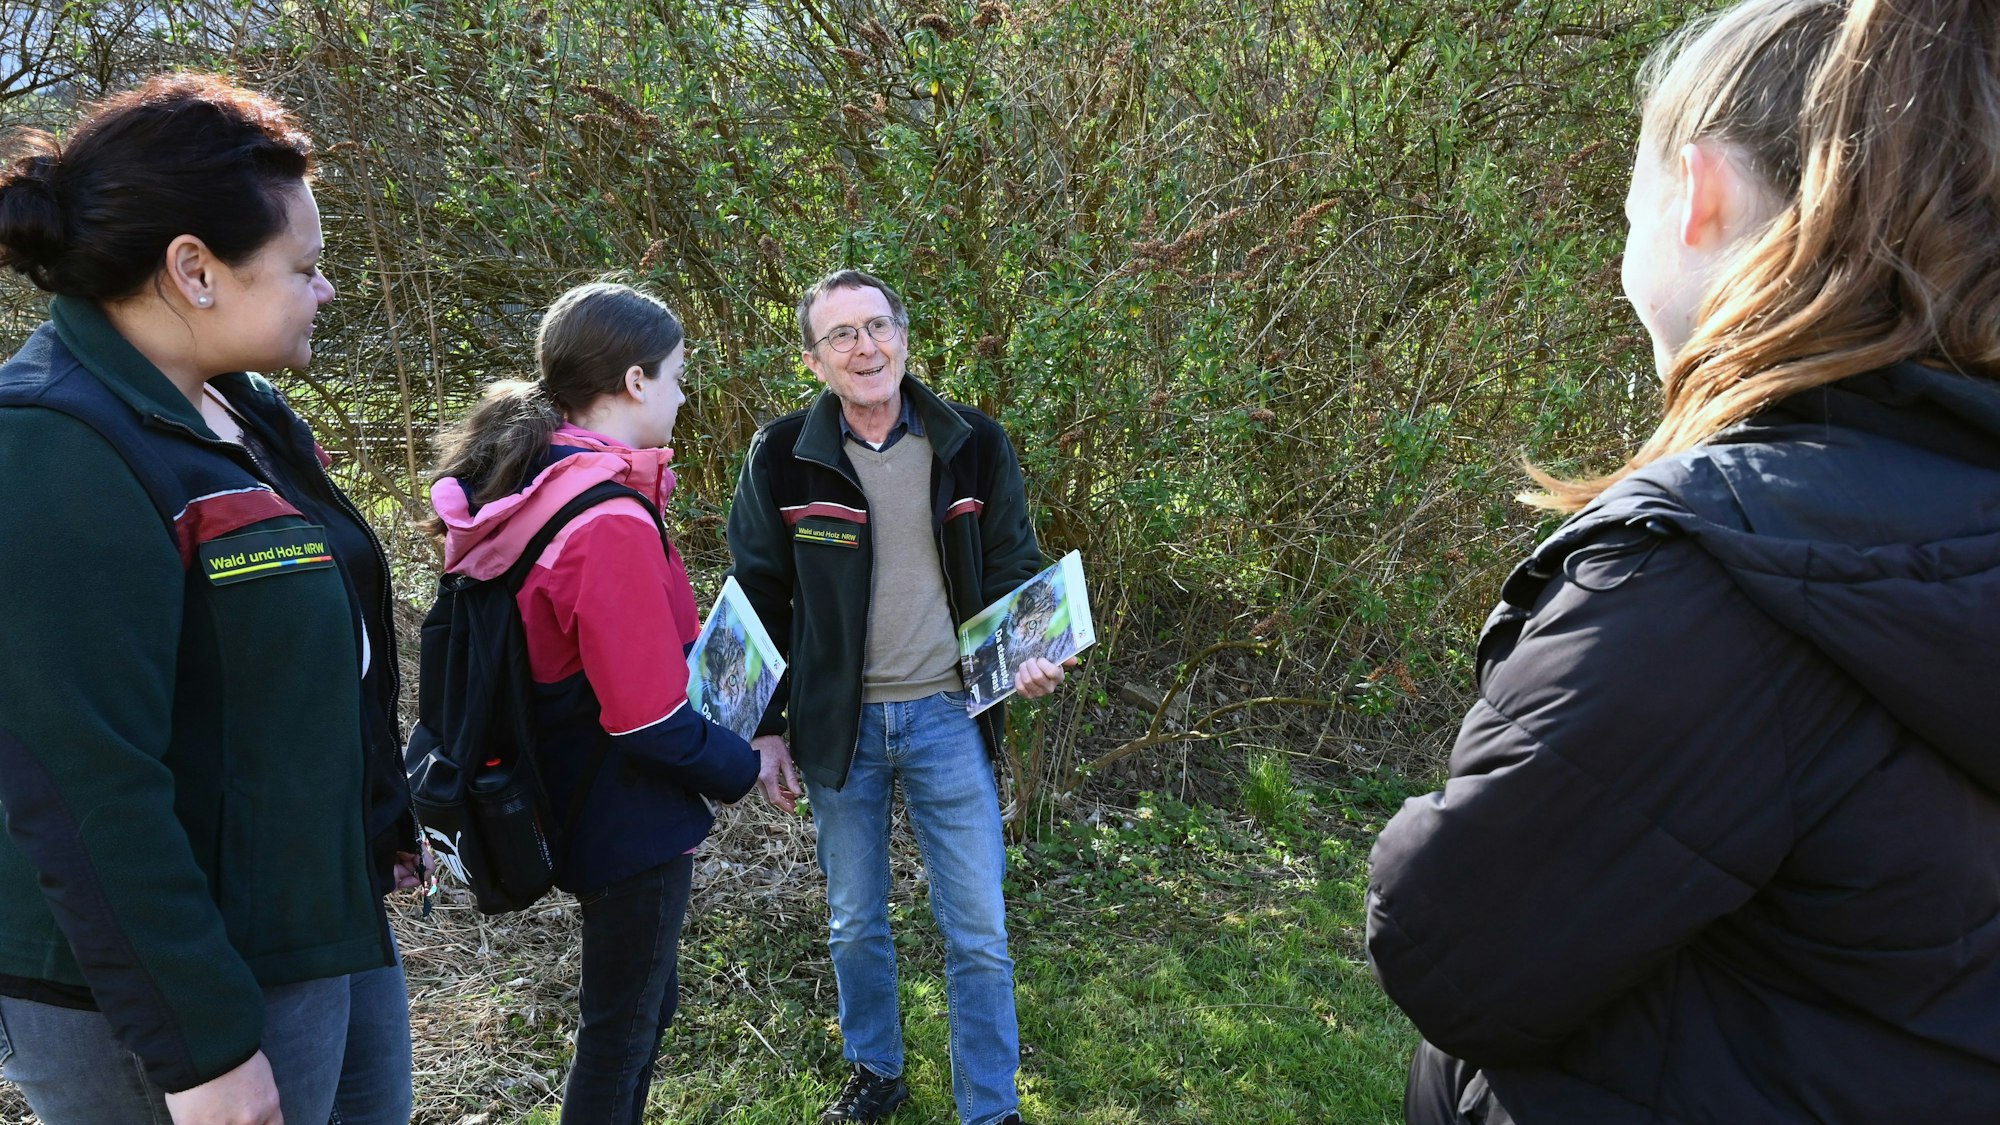 Ein Mann steht mit mehreren Schülerinnen im Wald. Er hat eine Informationsmappe in der Hand und spricht zu den jungen Frauen.